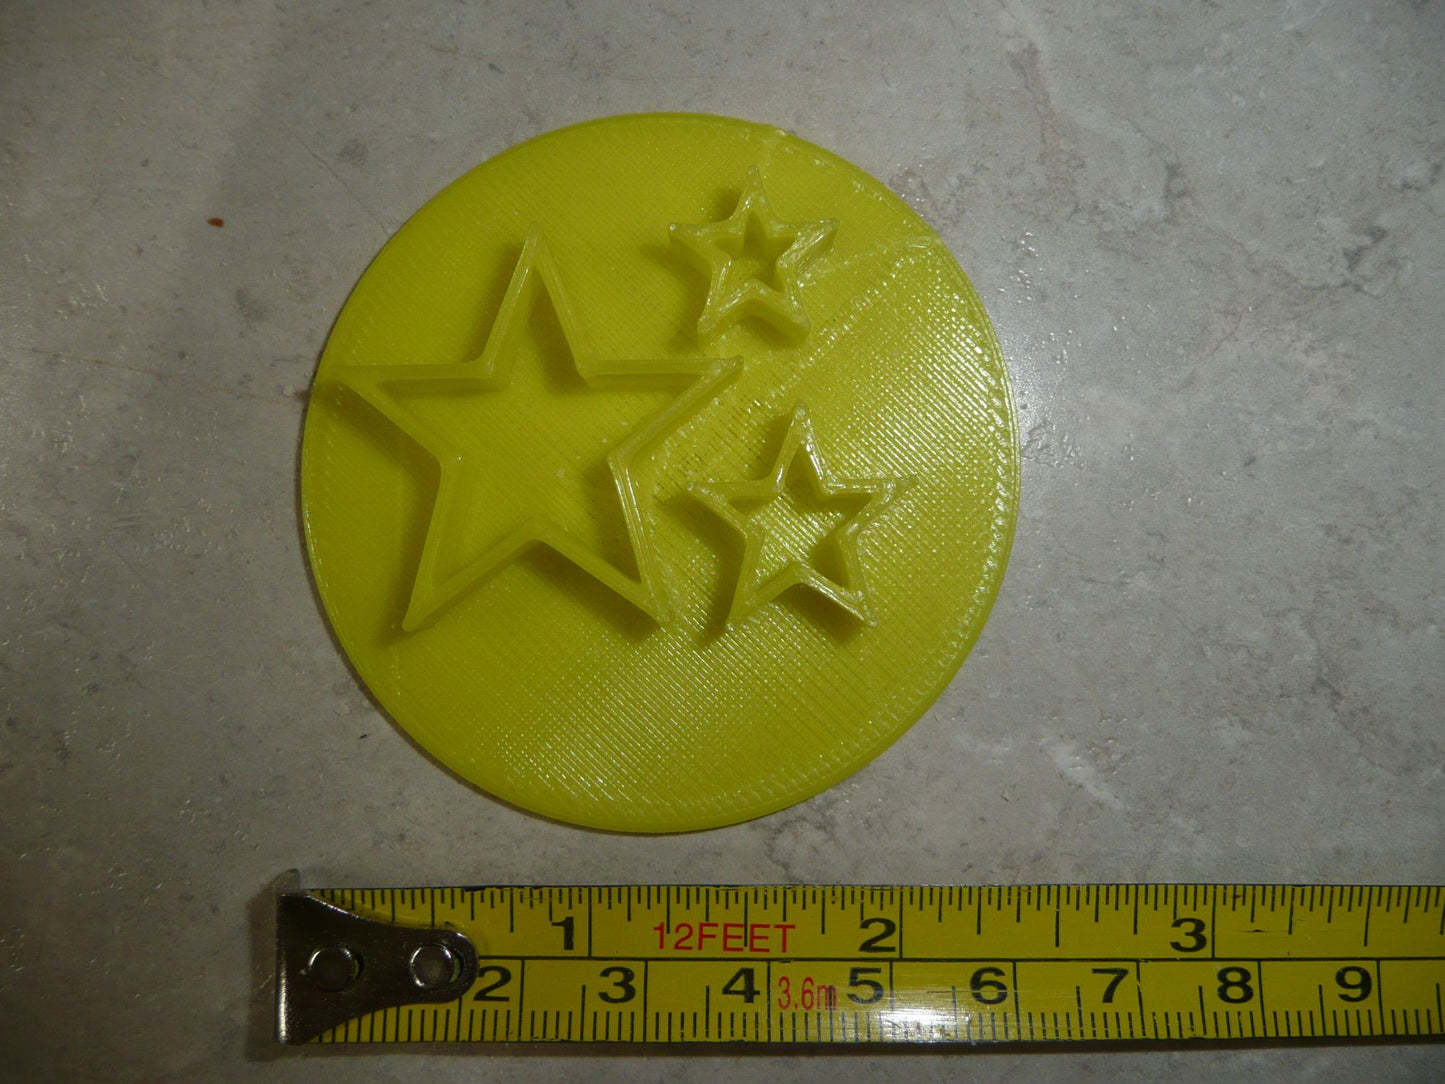 3 Stars Outline Design Impression Celebration Cookie Stamp Embosser USA PR4281